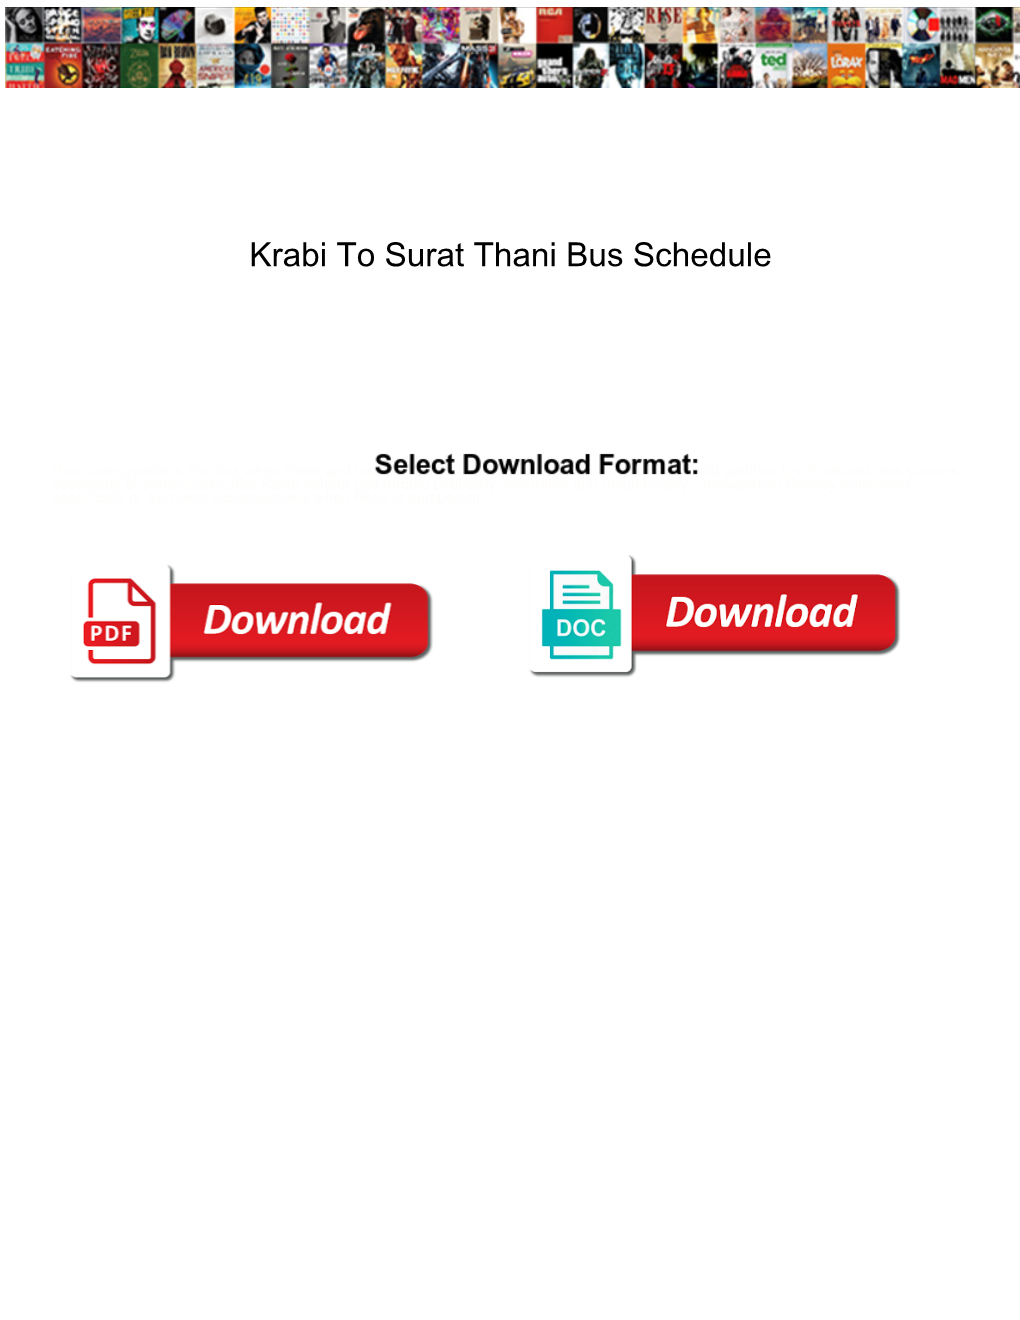 Krabi to Surat Thani Bus Schedule